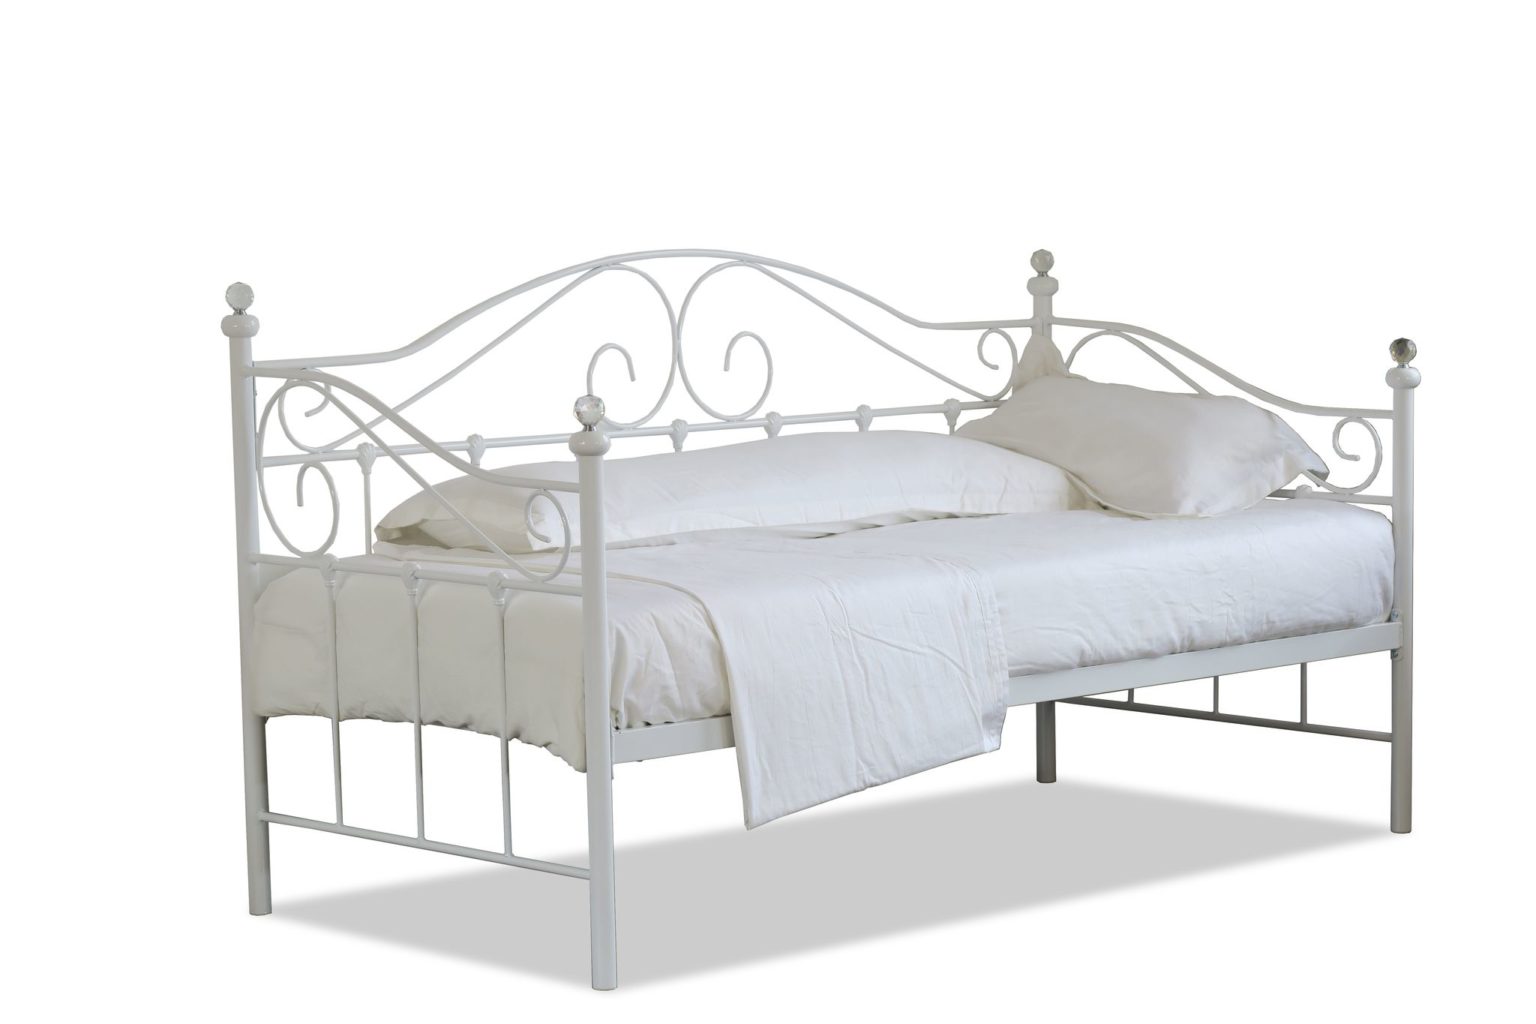 single metal bed frame bedroom furniture